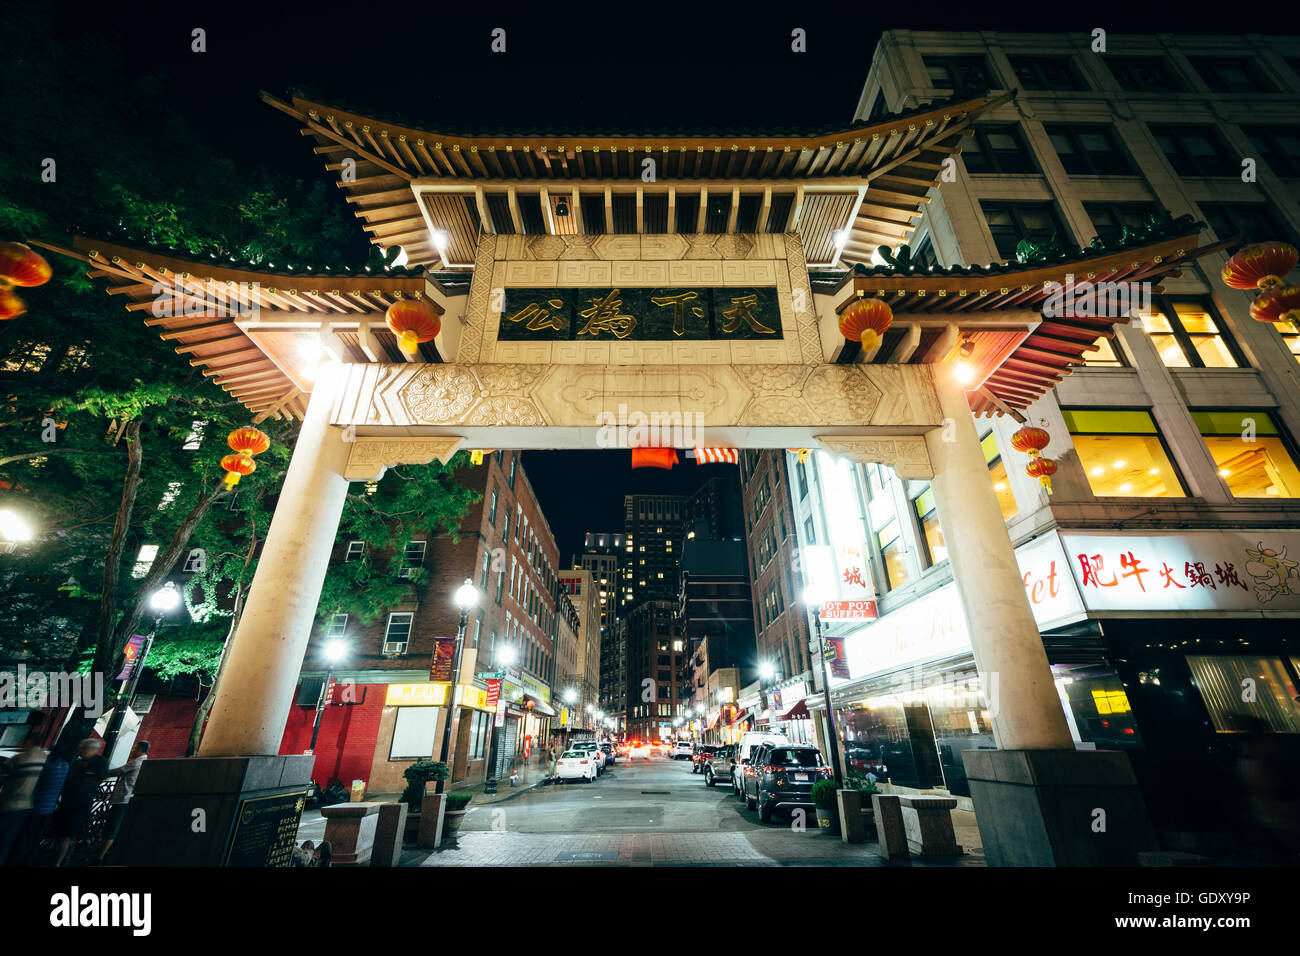 The Chinatown Gate at night, in Boston, Massachusetts. Stock Photo